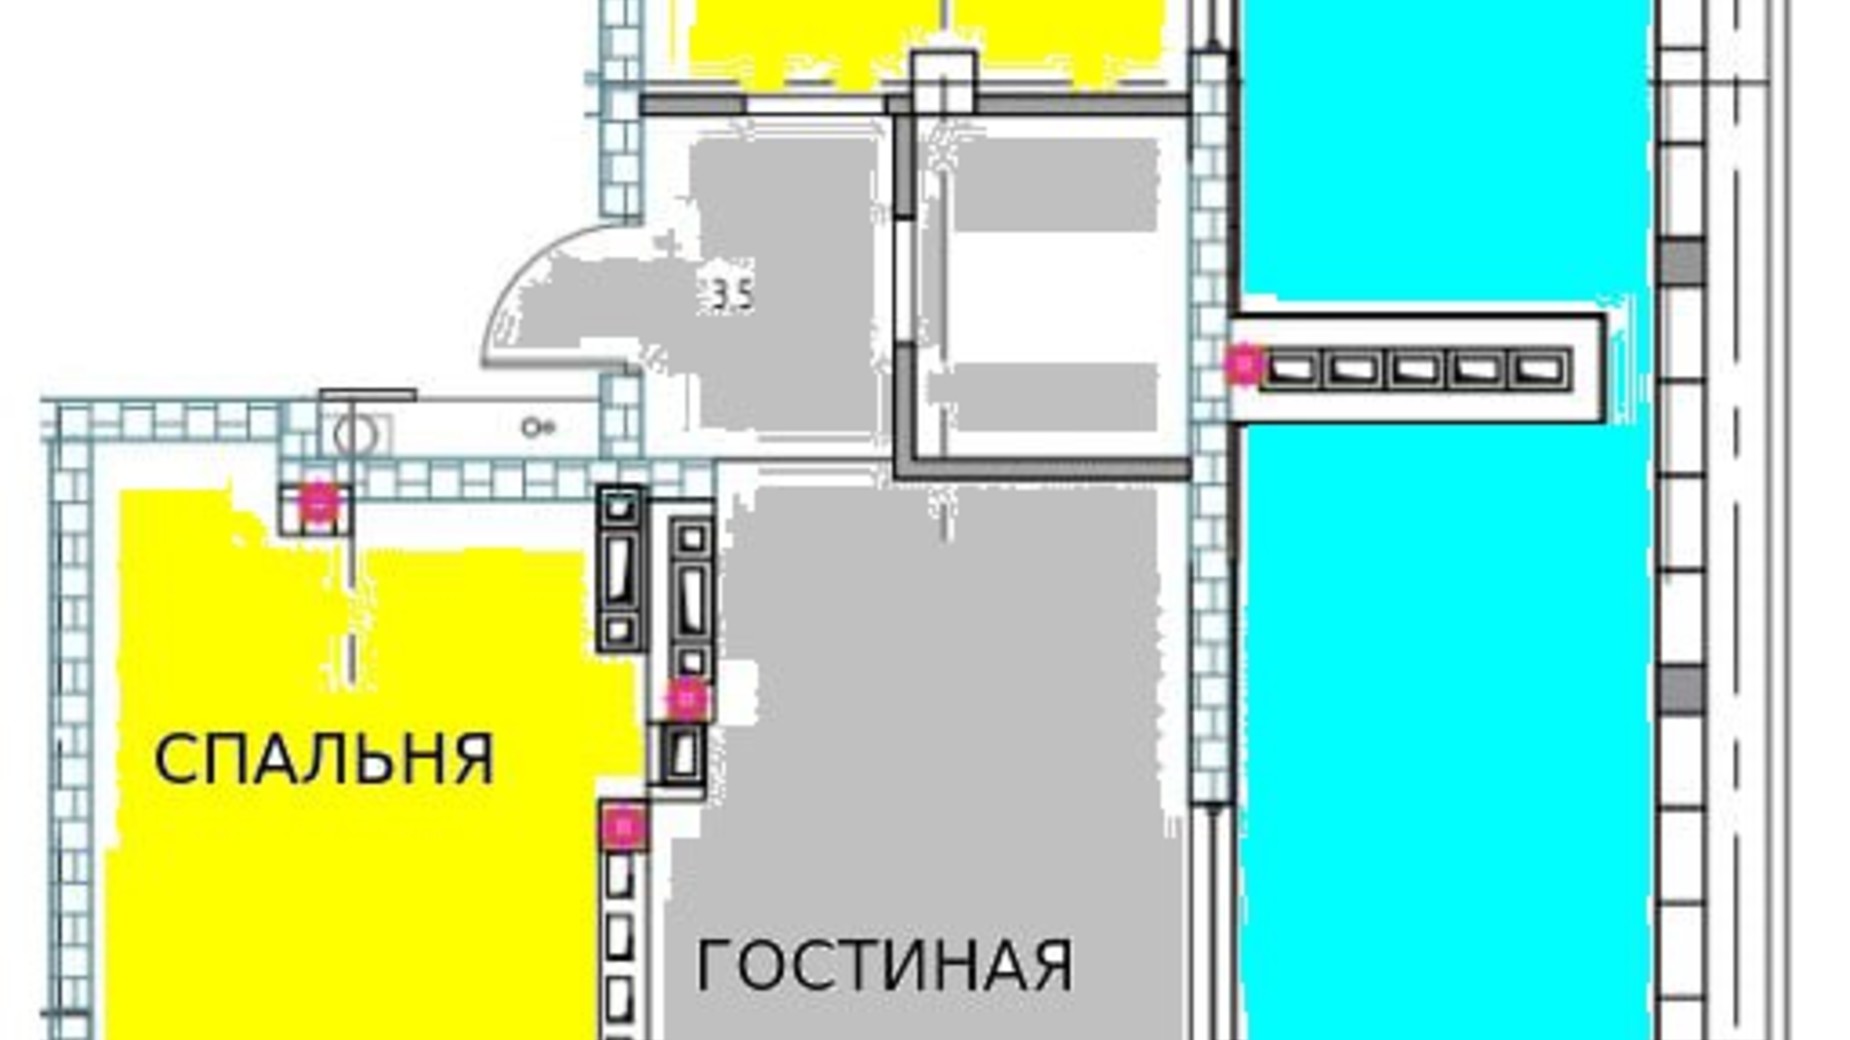 Планировка 2-комнатной квартиры в КД Graf на Педагогической 95 м², фото 590713